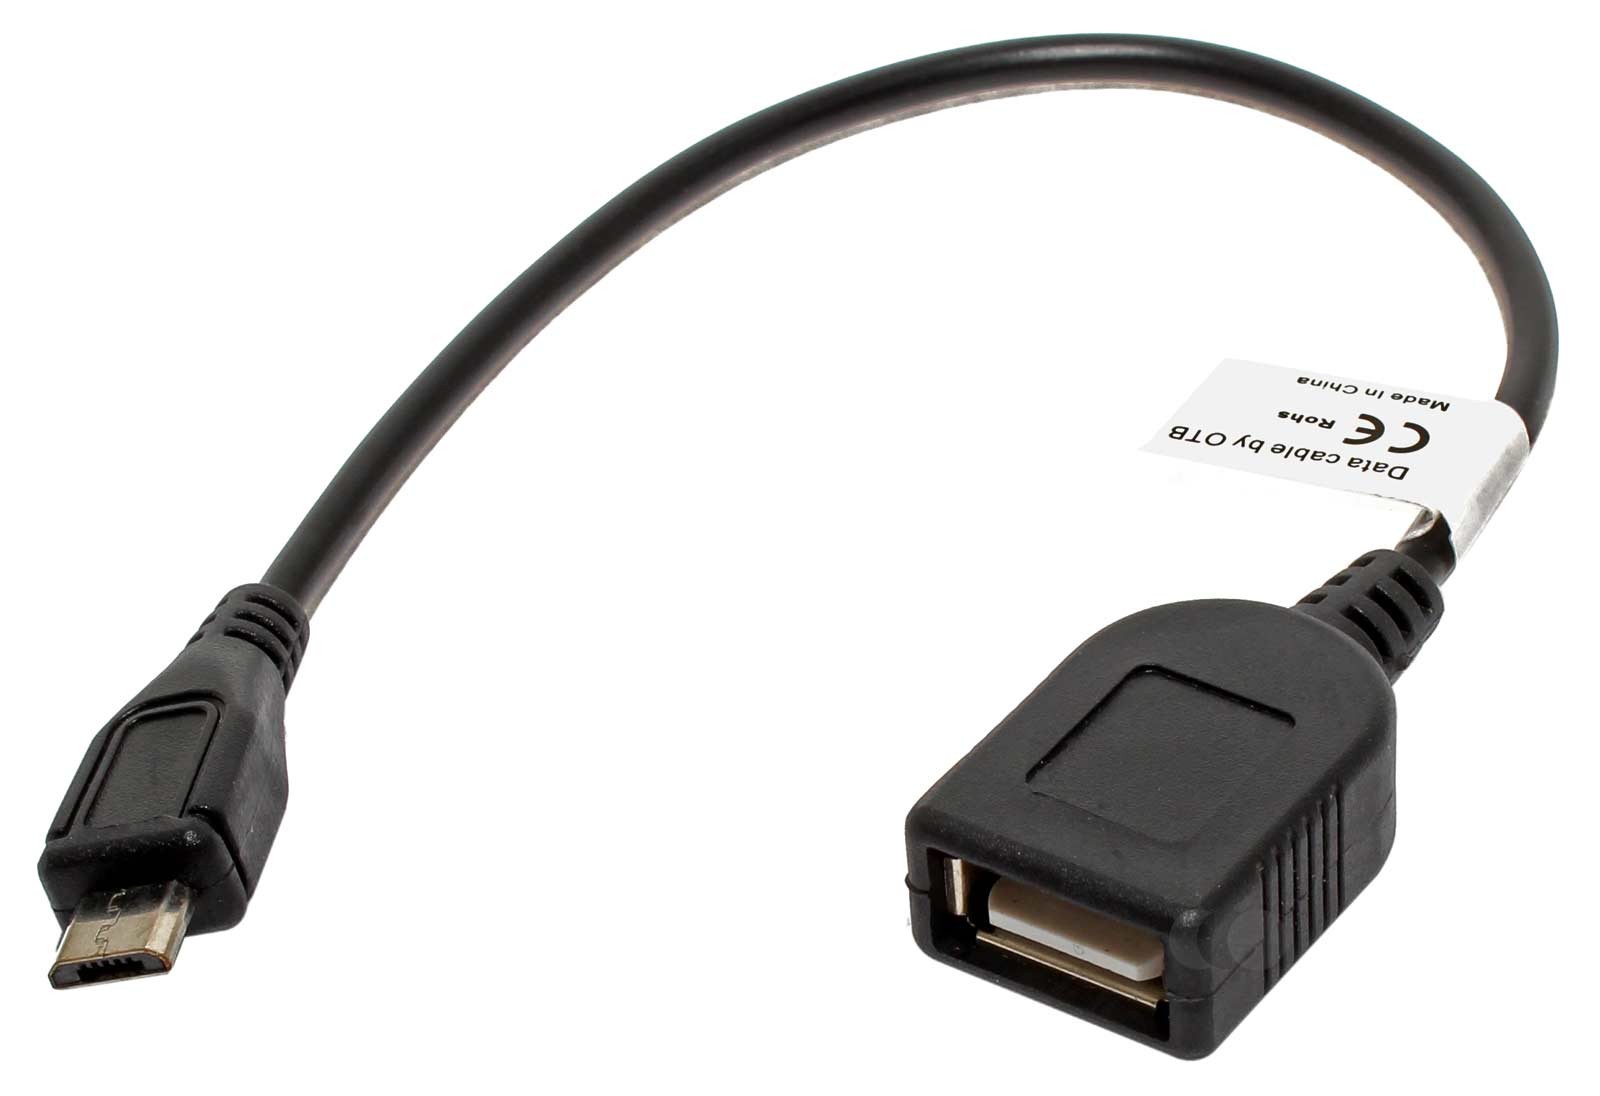 USB Adapter für alle Geräte mit Micro USB Anschluss und OTG-Funktion